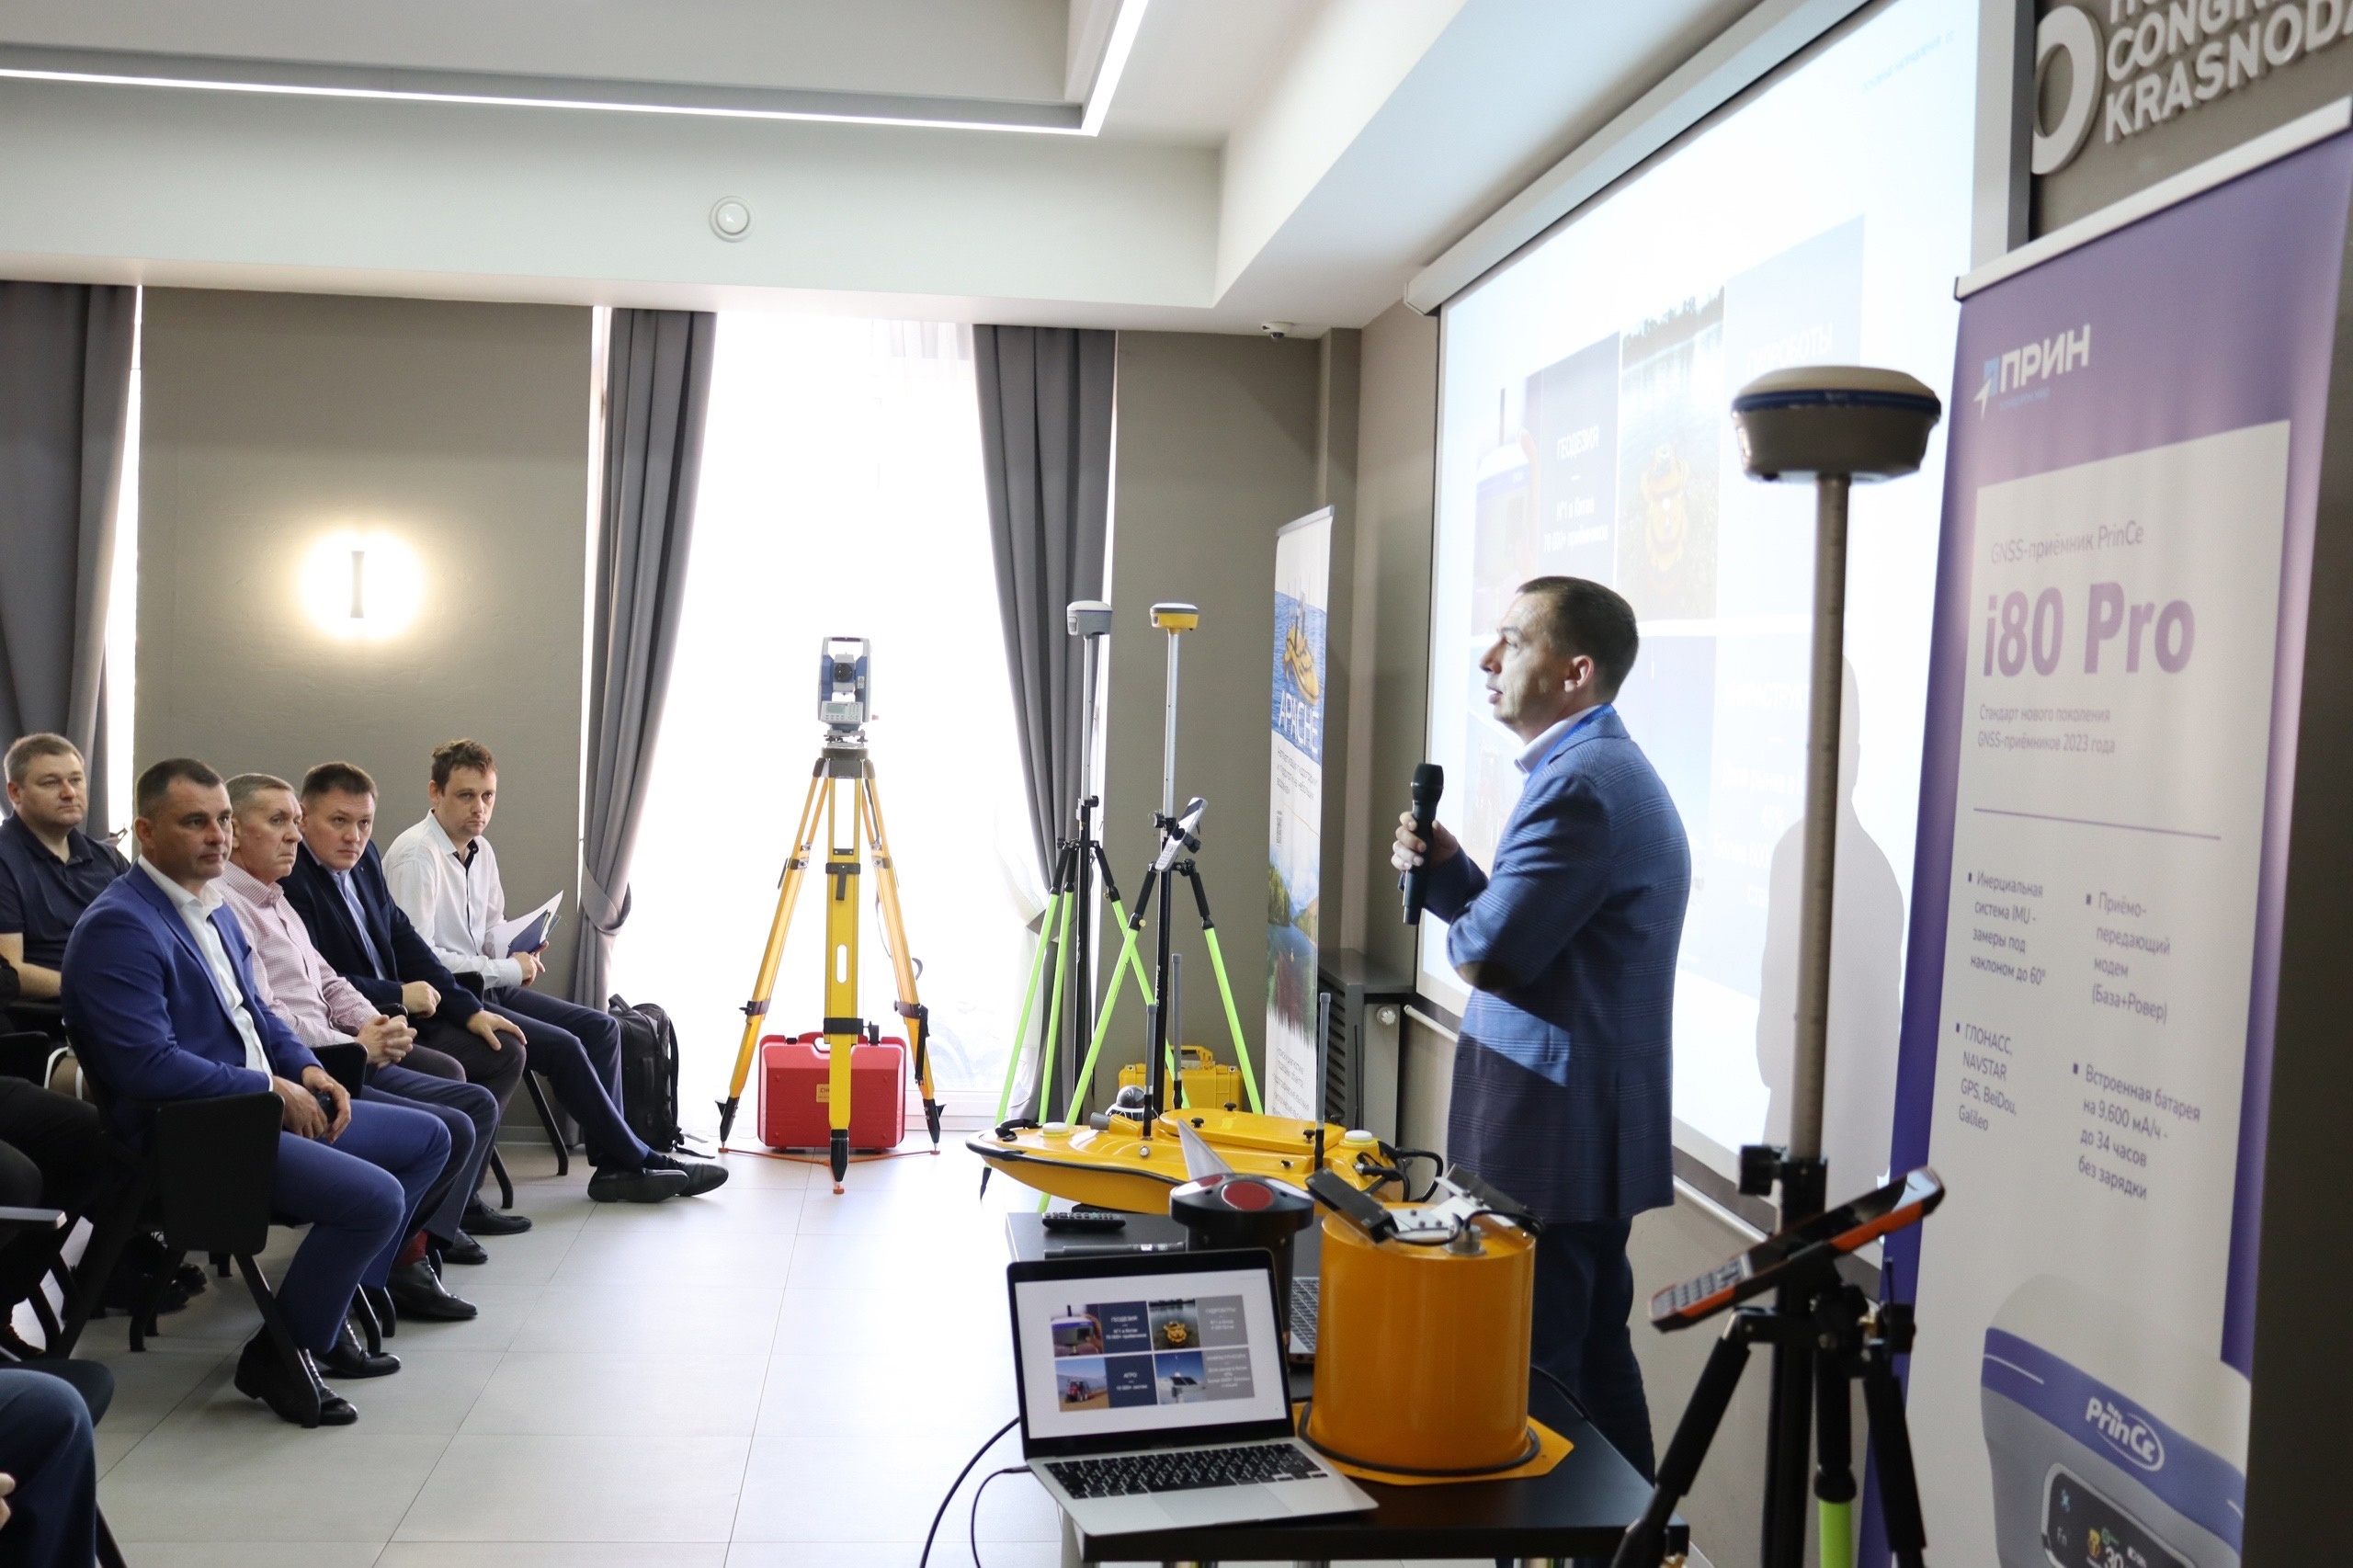 АО «ПРИН» - одно из ведущих в России по продаже геодезического оборудования, провело выставку-презентацию нового оборудования